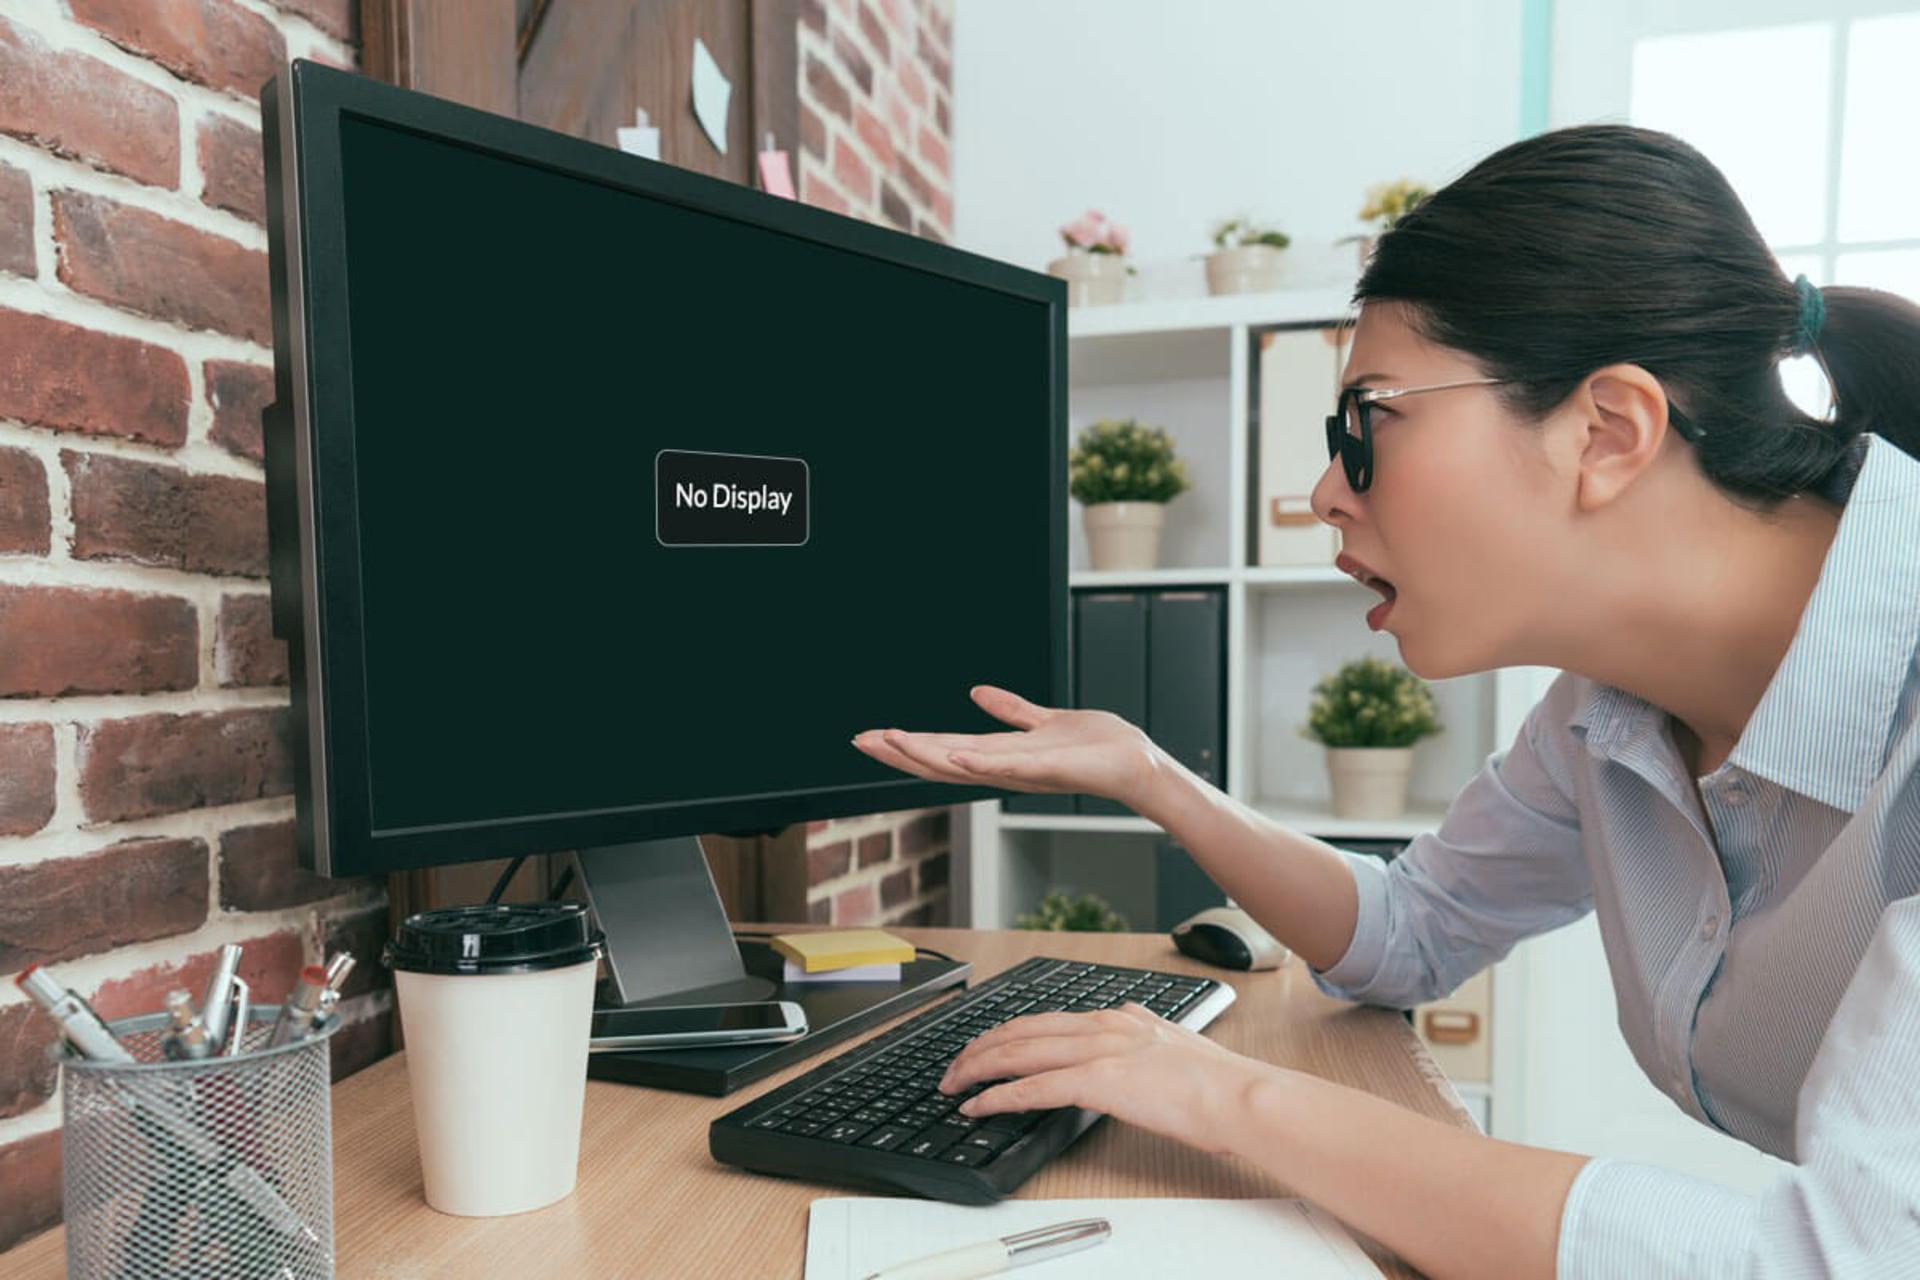 یک زن عصبانی در حال نگاه کردن به کامپیوتر خاموش